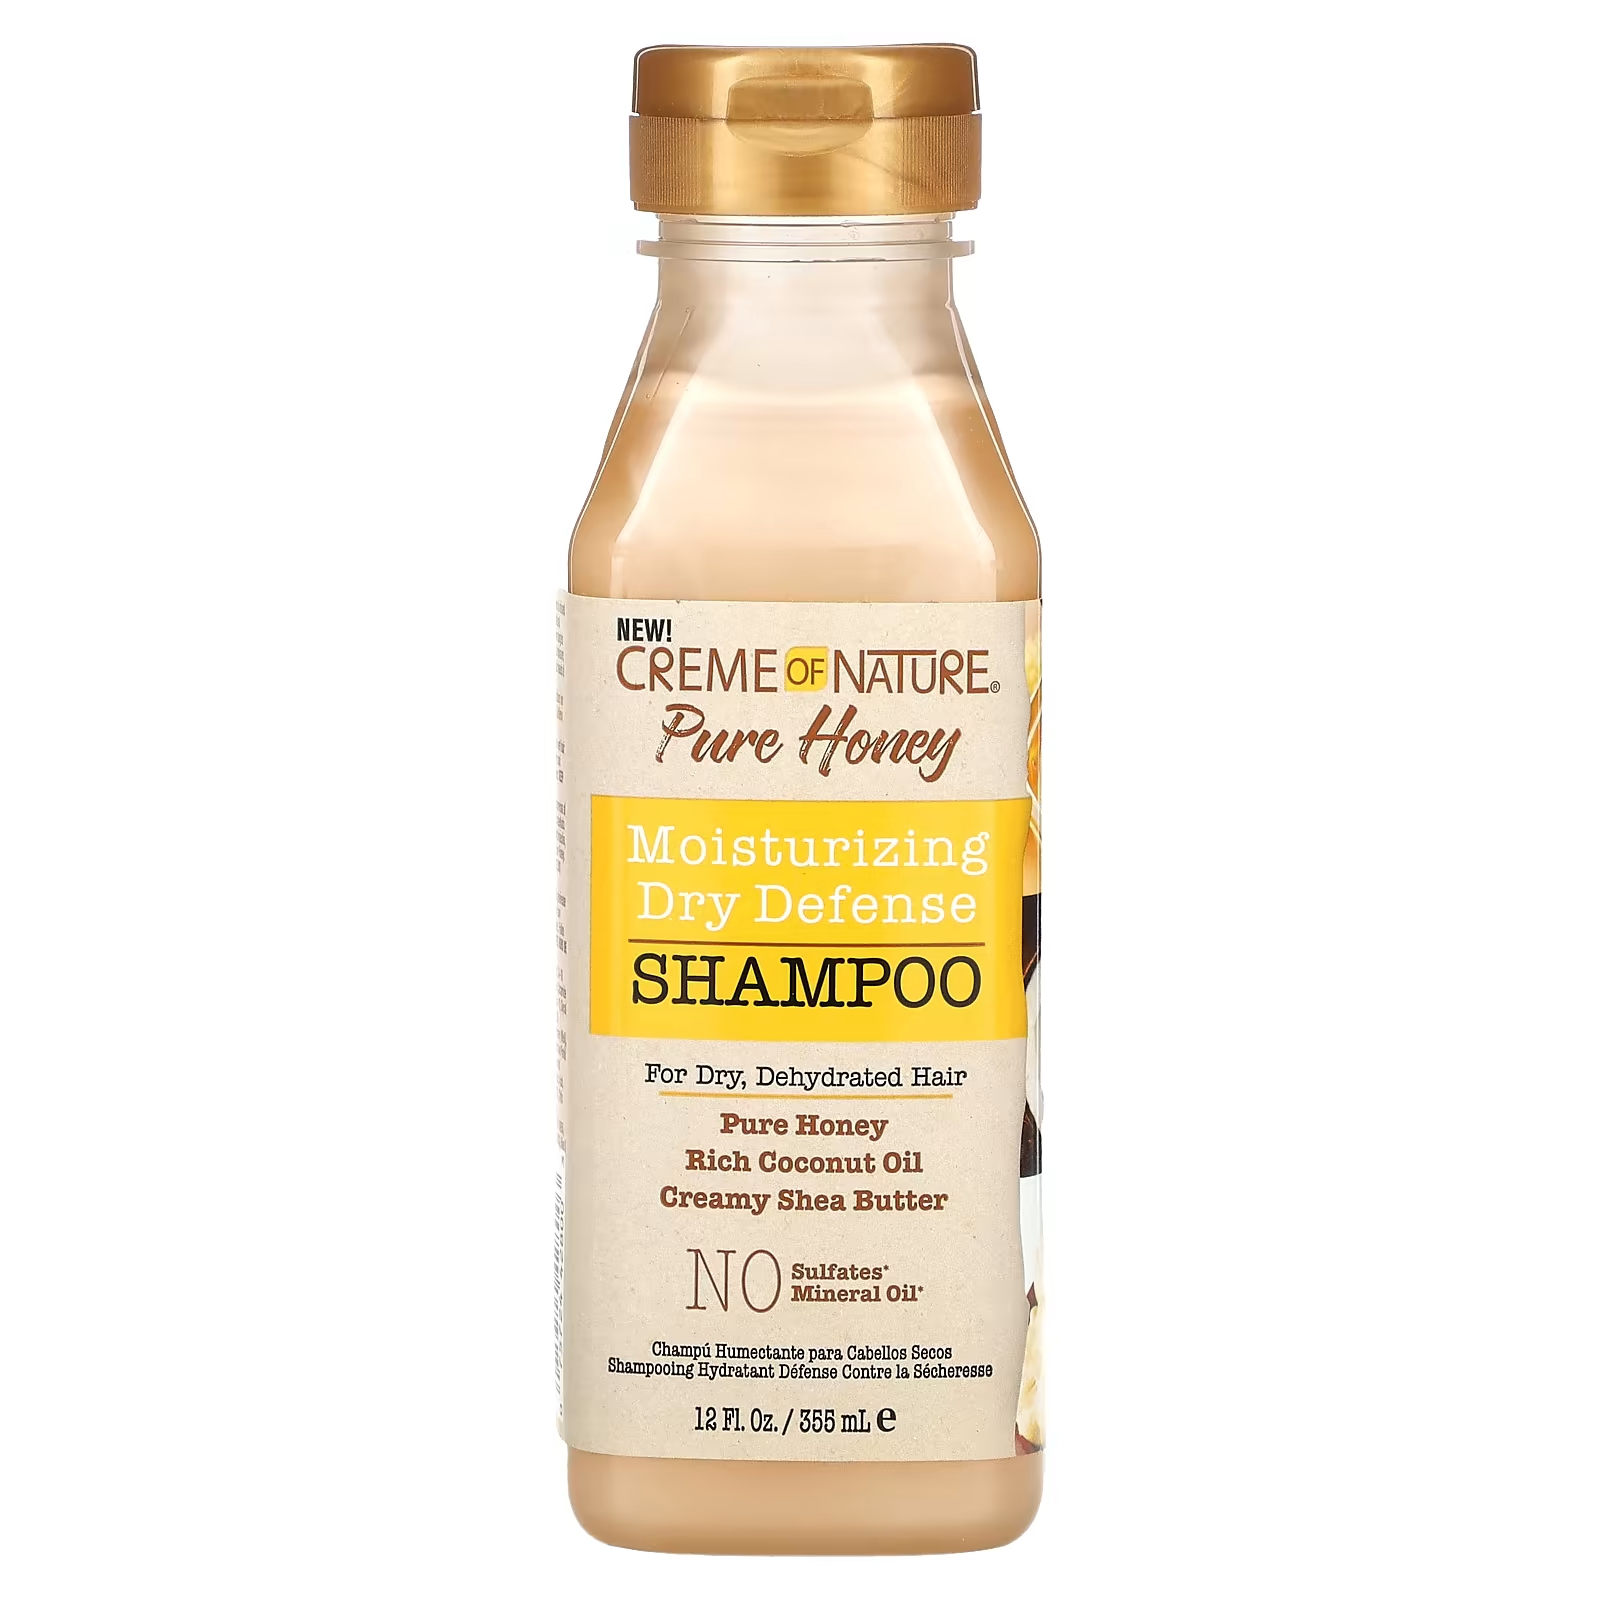 Creme Of Nature Pure Honey Увлажняющий сухой защитный шампунь для сухих обезвоженных волос, 12 жидких унций (355 мл) мусс для завивки волос creme of nature pure honey moisture